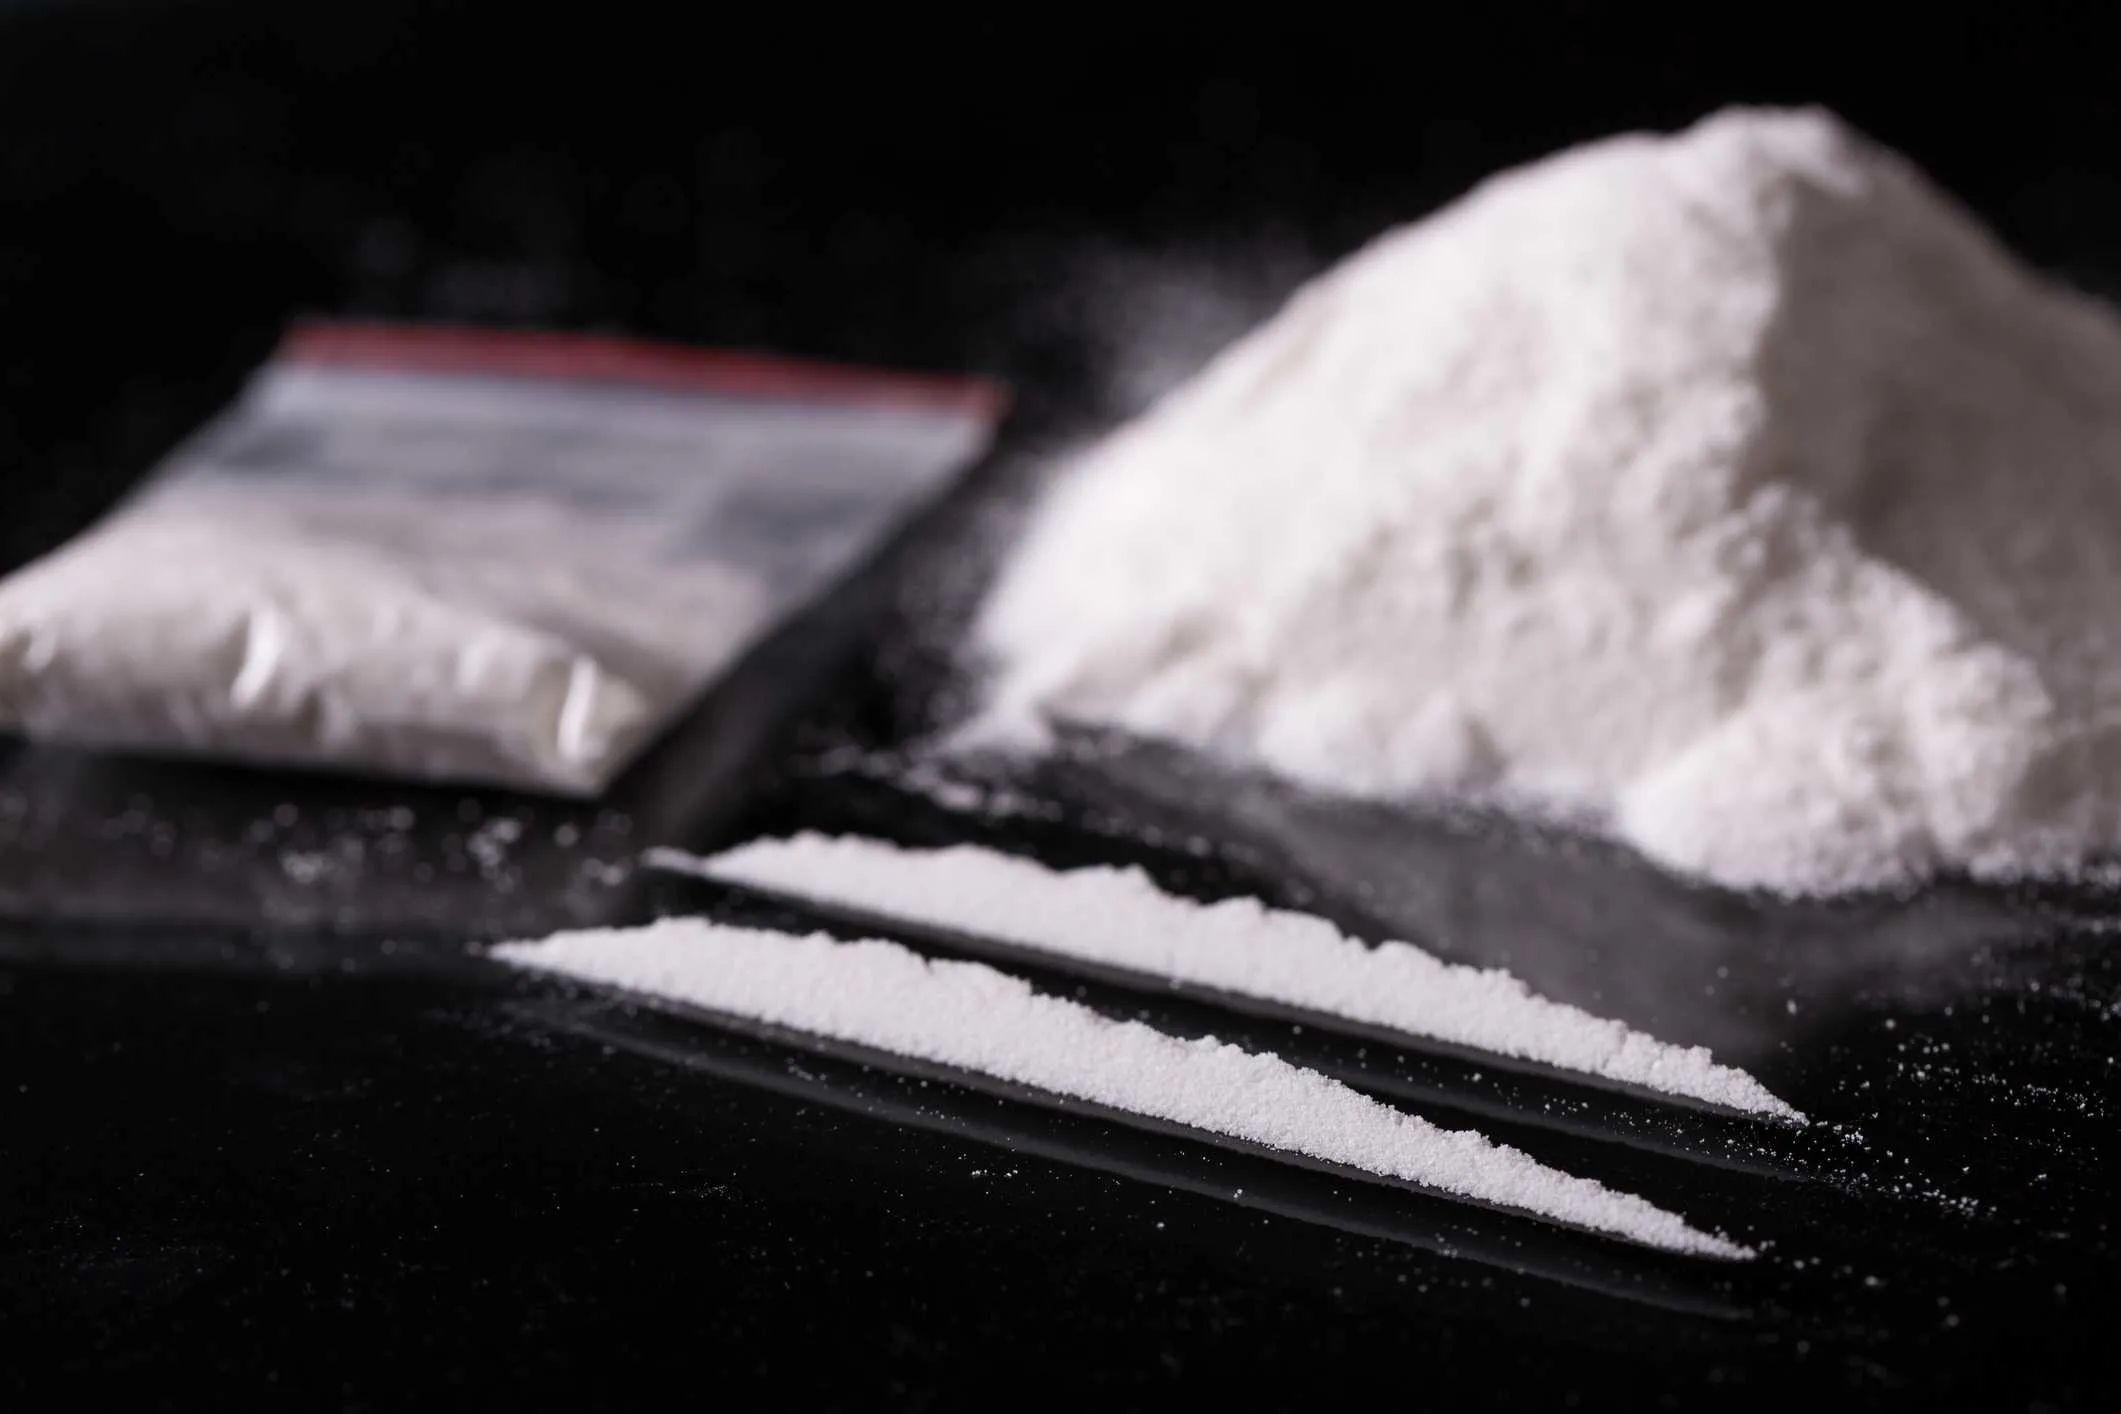 Čisti kokain nikada dostupniji u Evropi, cijena stabilna